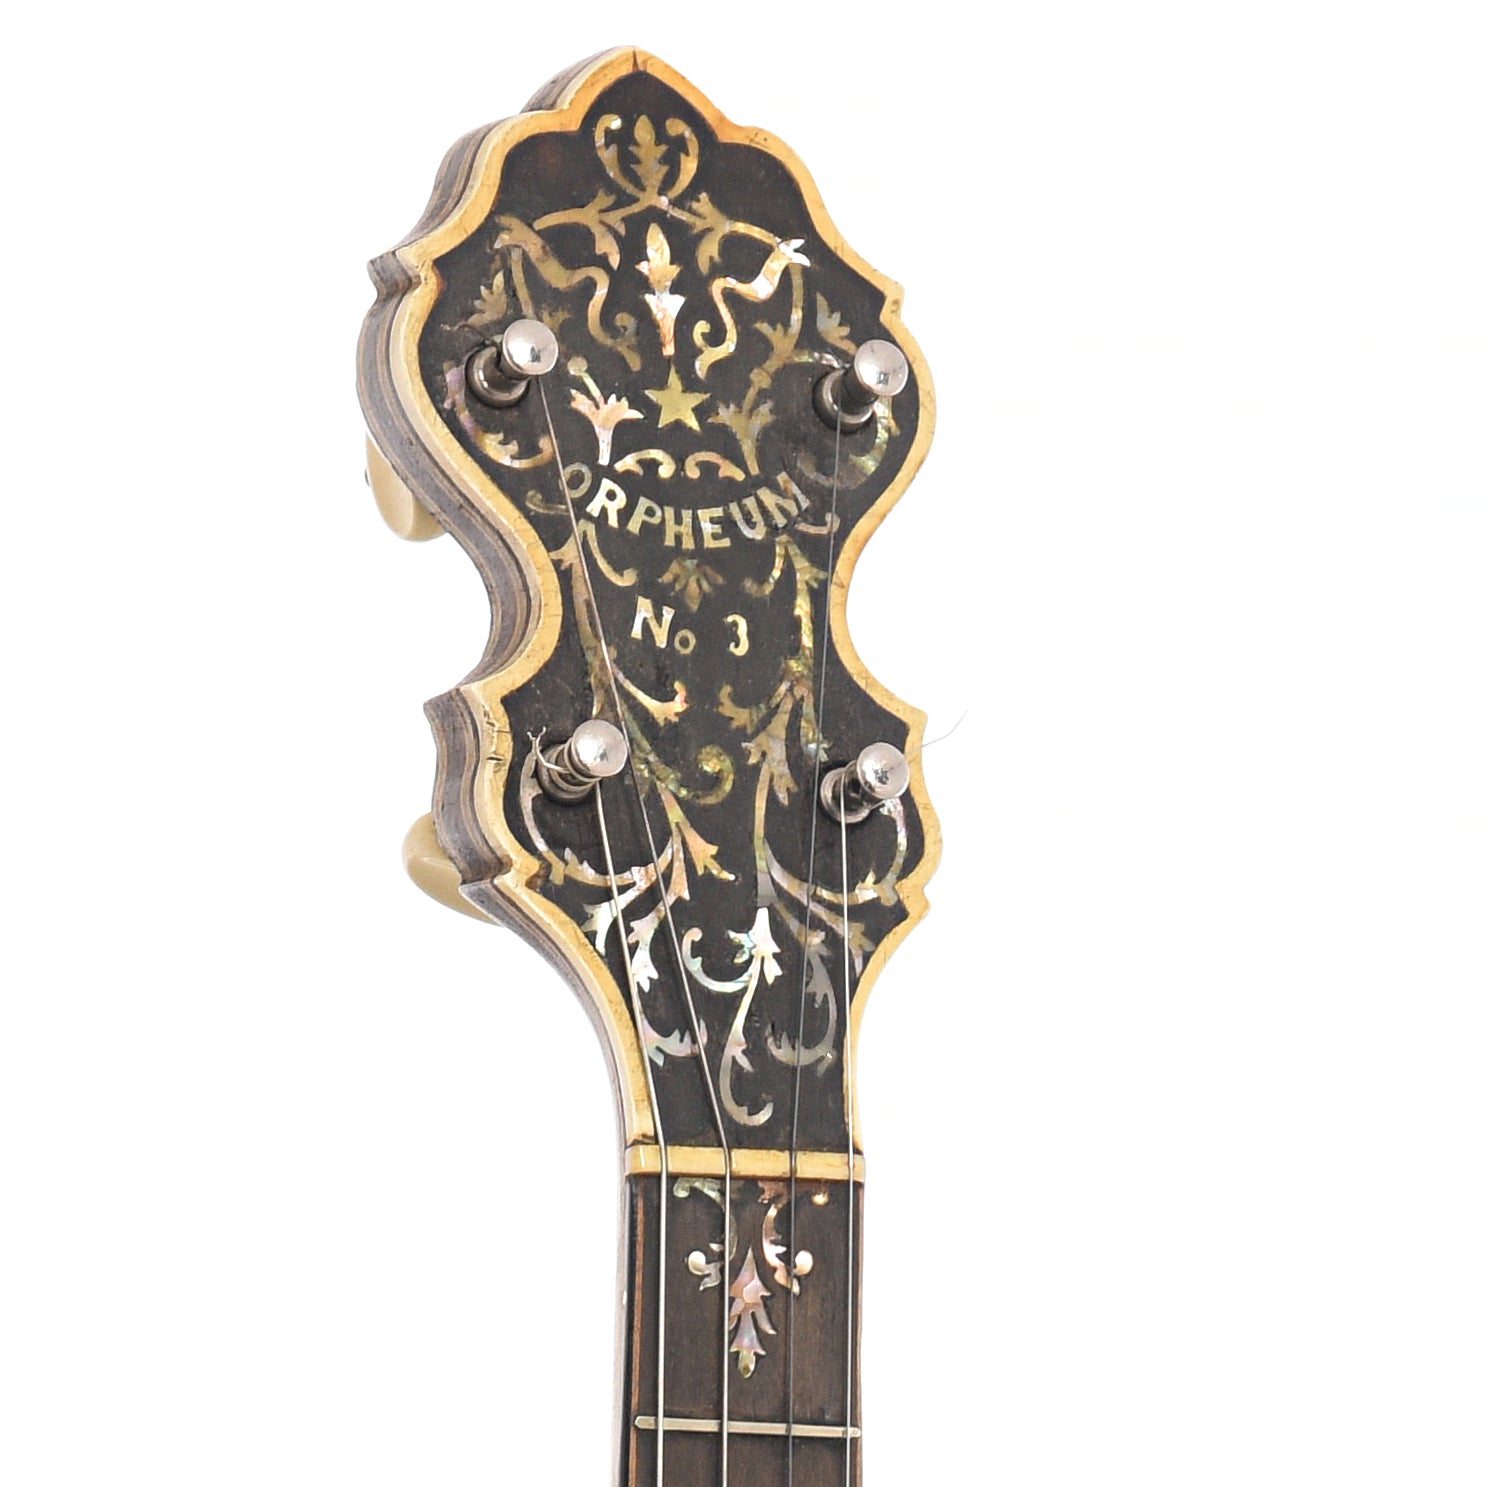 Headstock of Orpheum No.3 Special Tenor Banjo (c.1919)